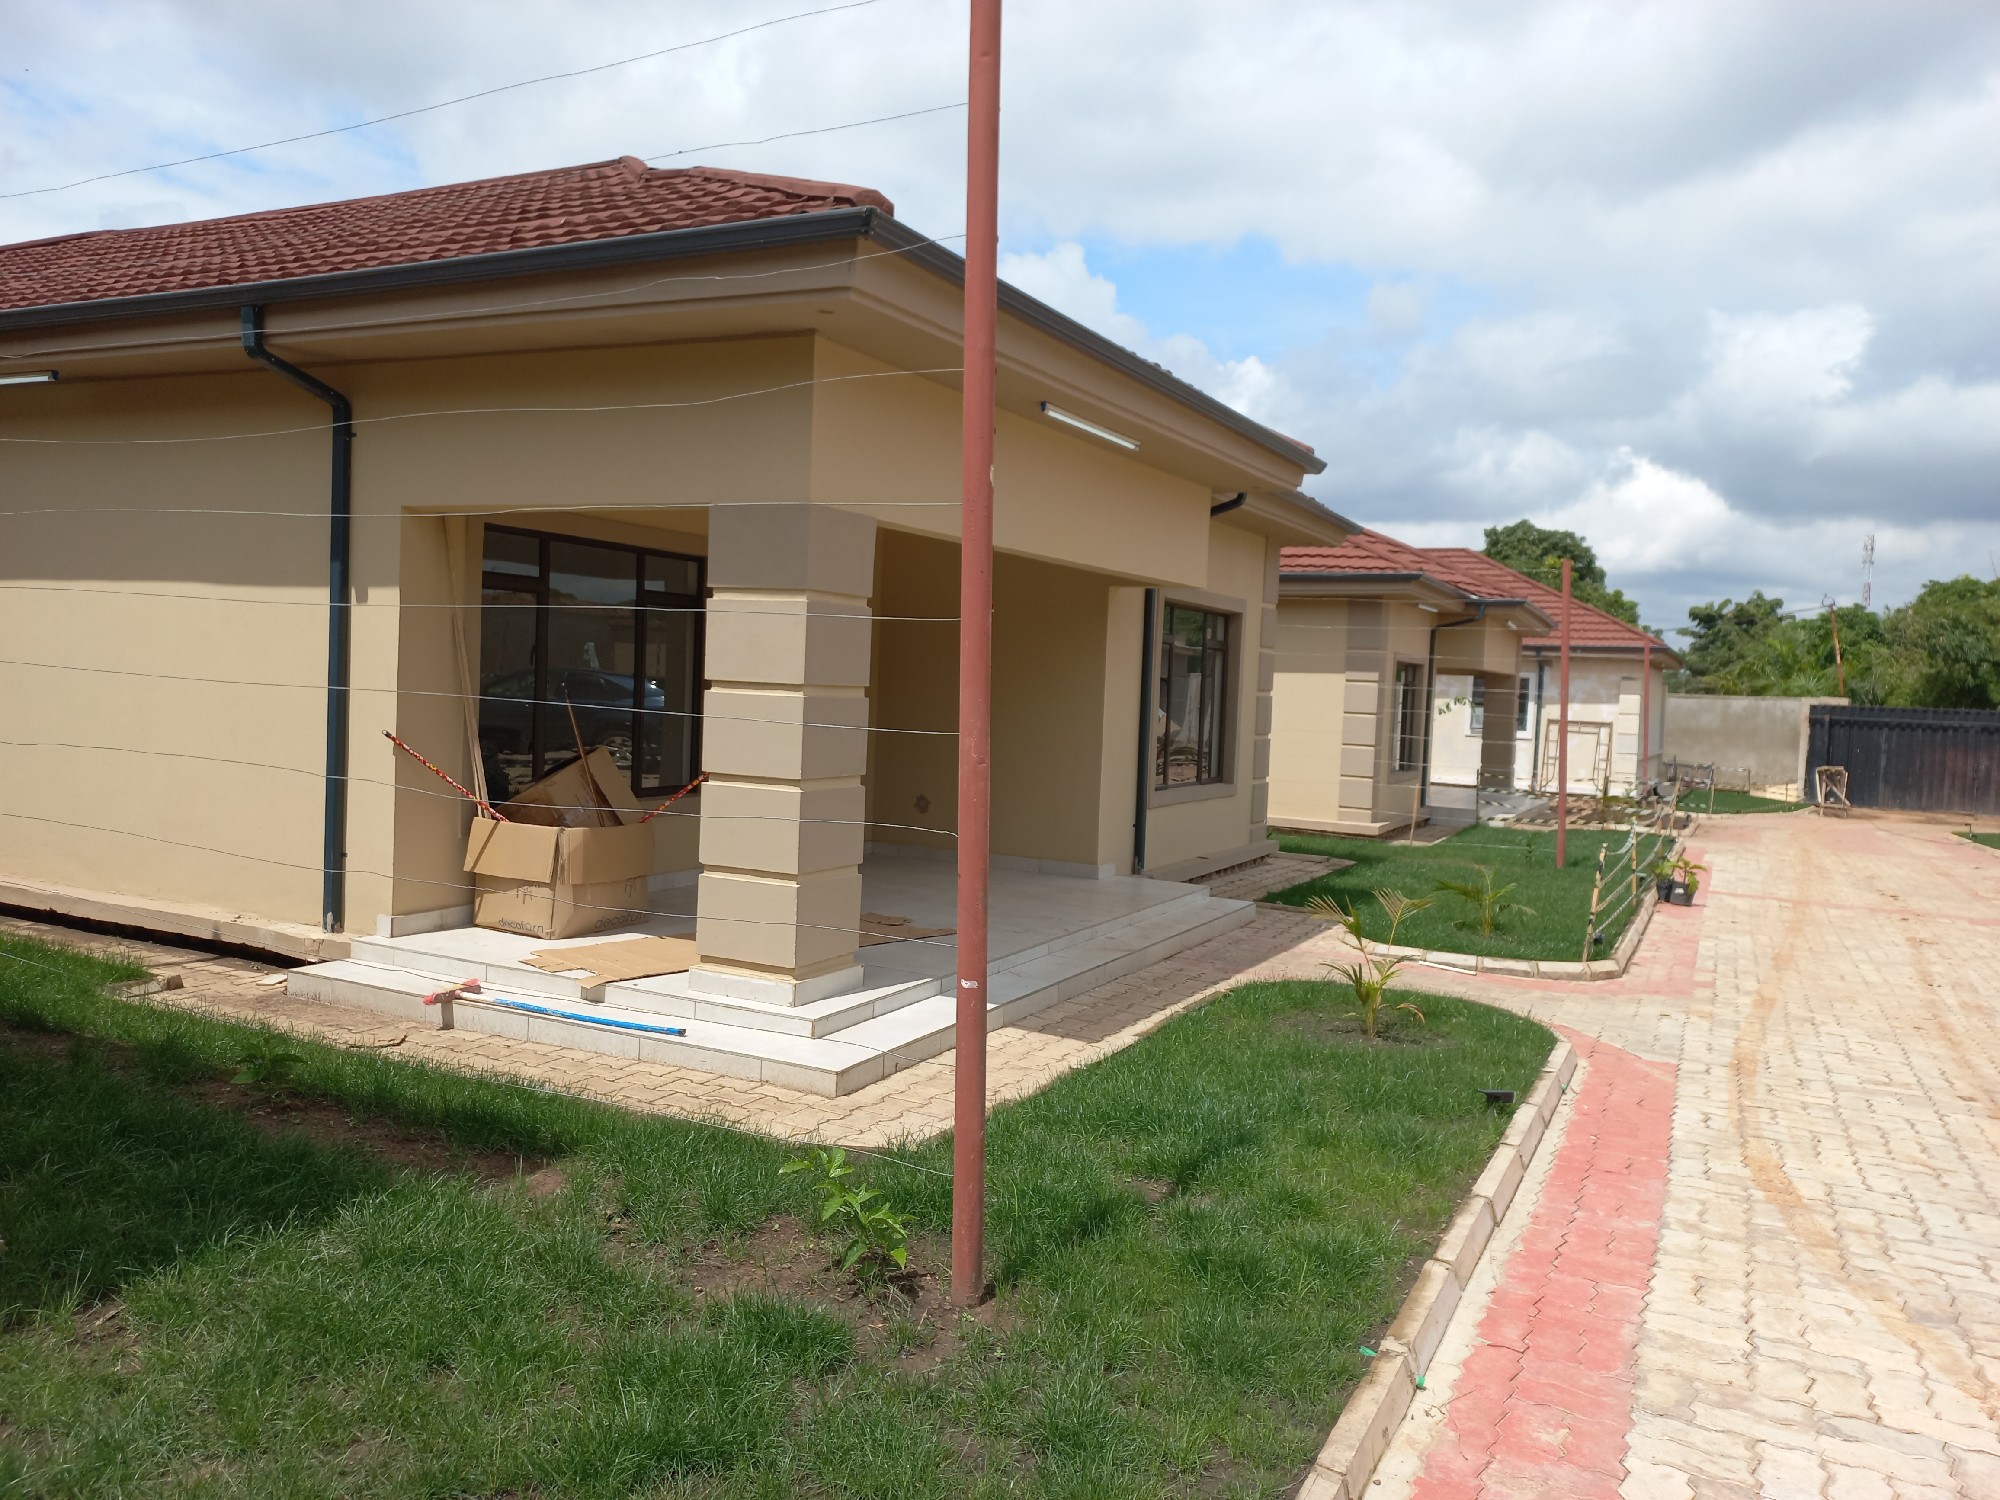 Appartement meublée à louer dans la ville de Lubumbashi